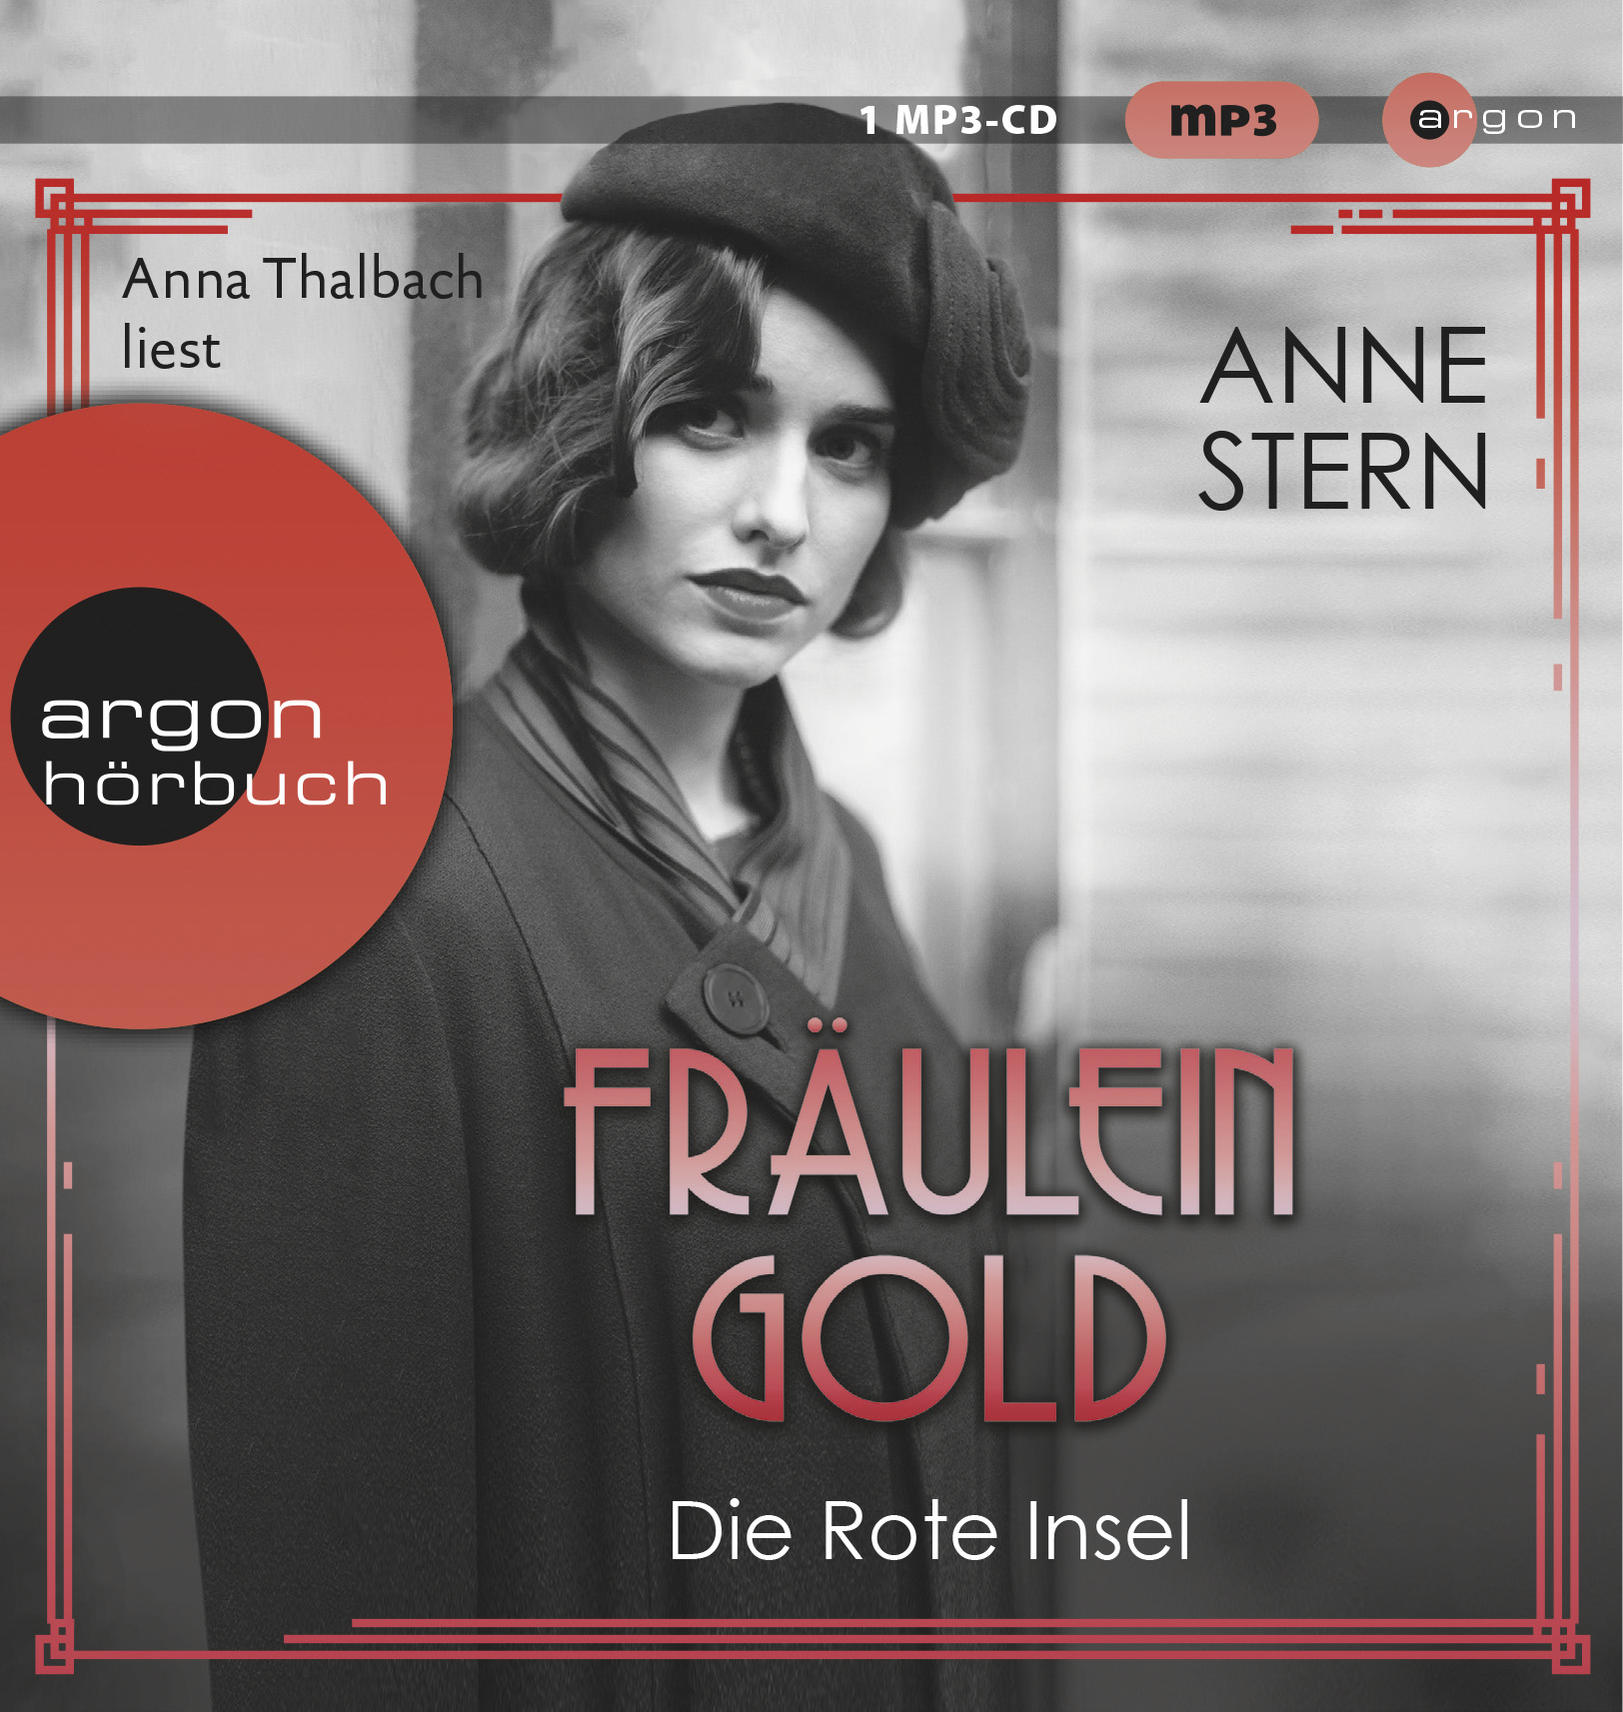 Anna Thalbach - - Rote Insel Gold: (MP3-CD) Die Fräulein